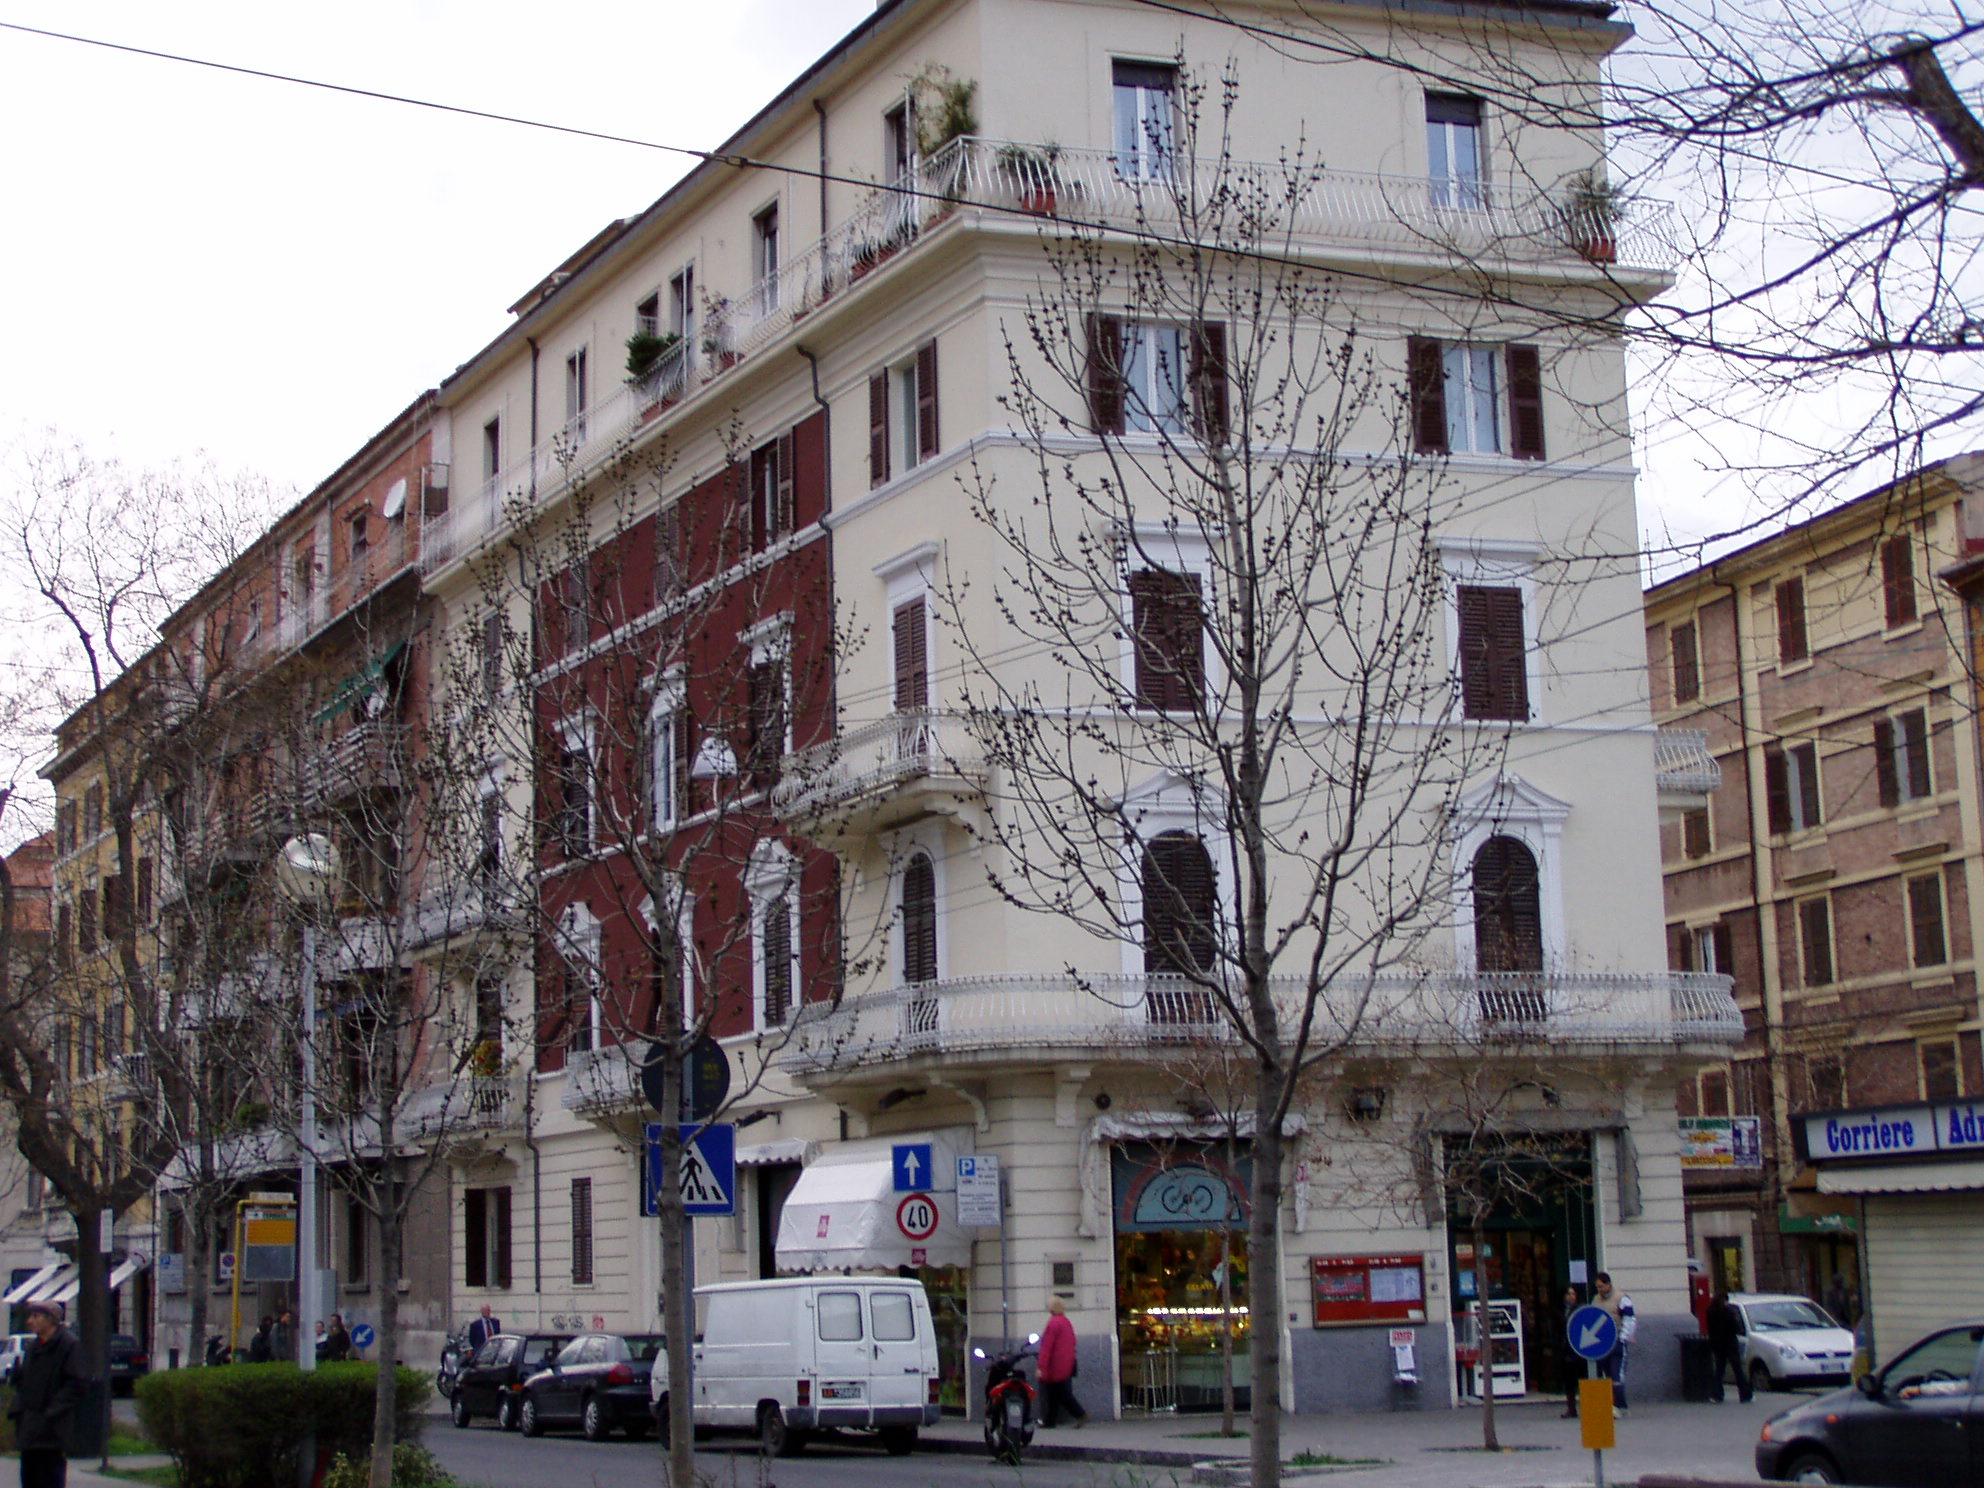 Palazzo in stile neoclassico (palazzo) - Ancona (AN) 